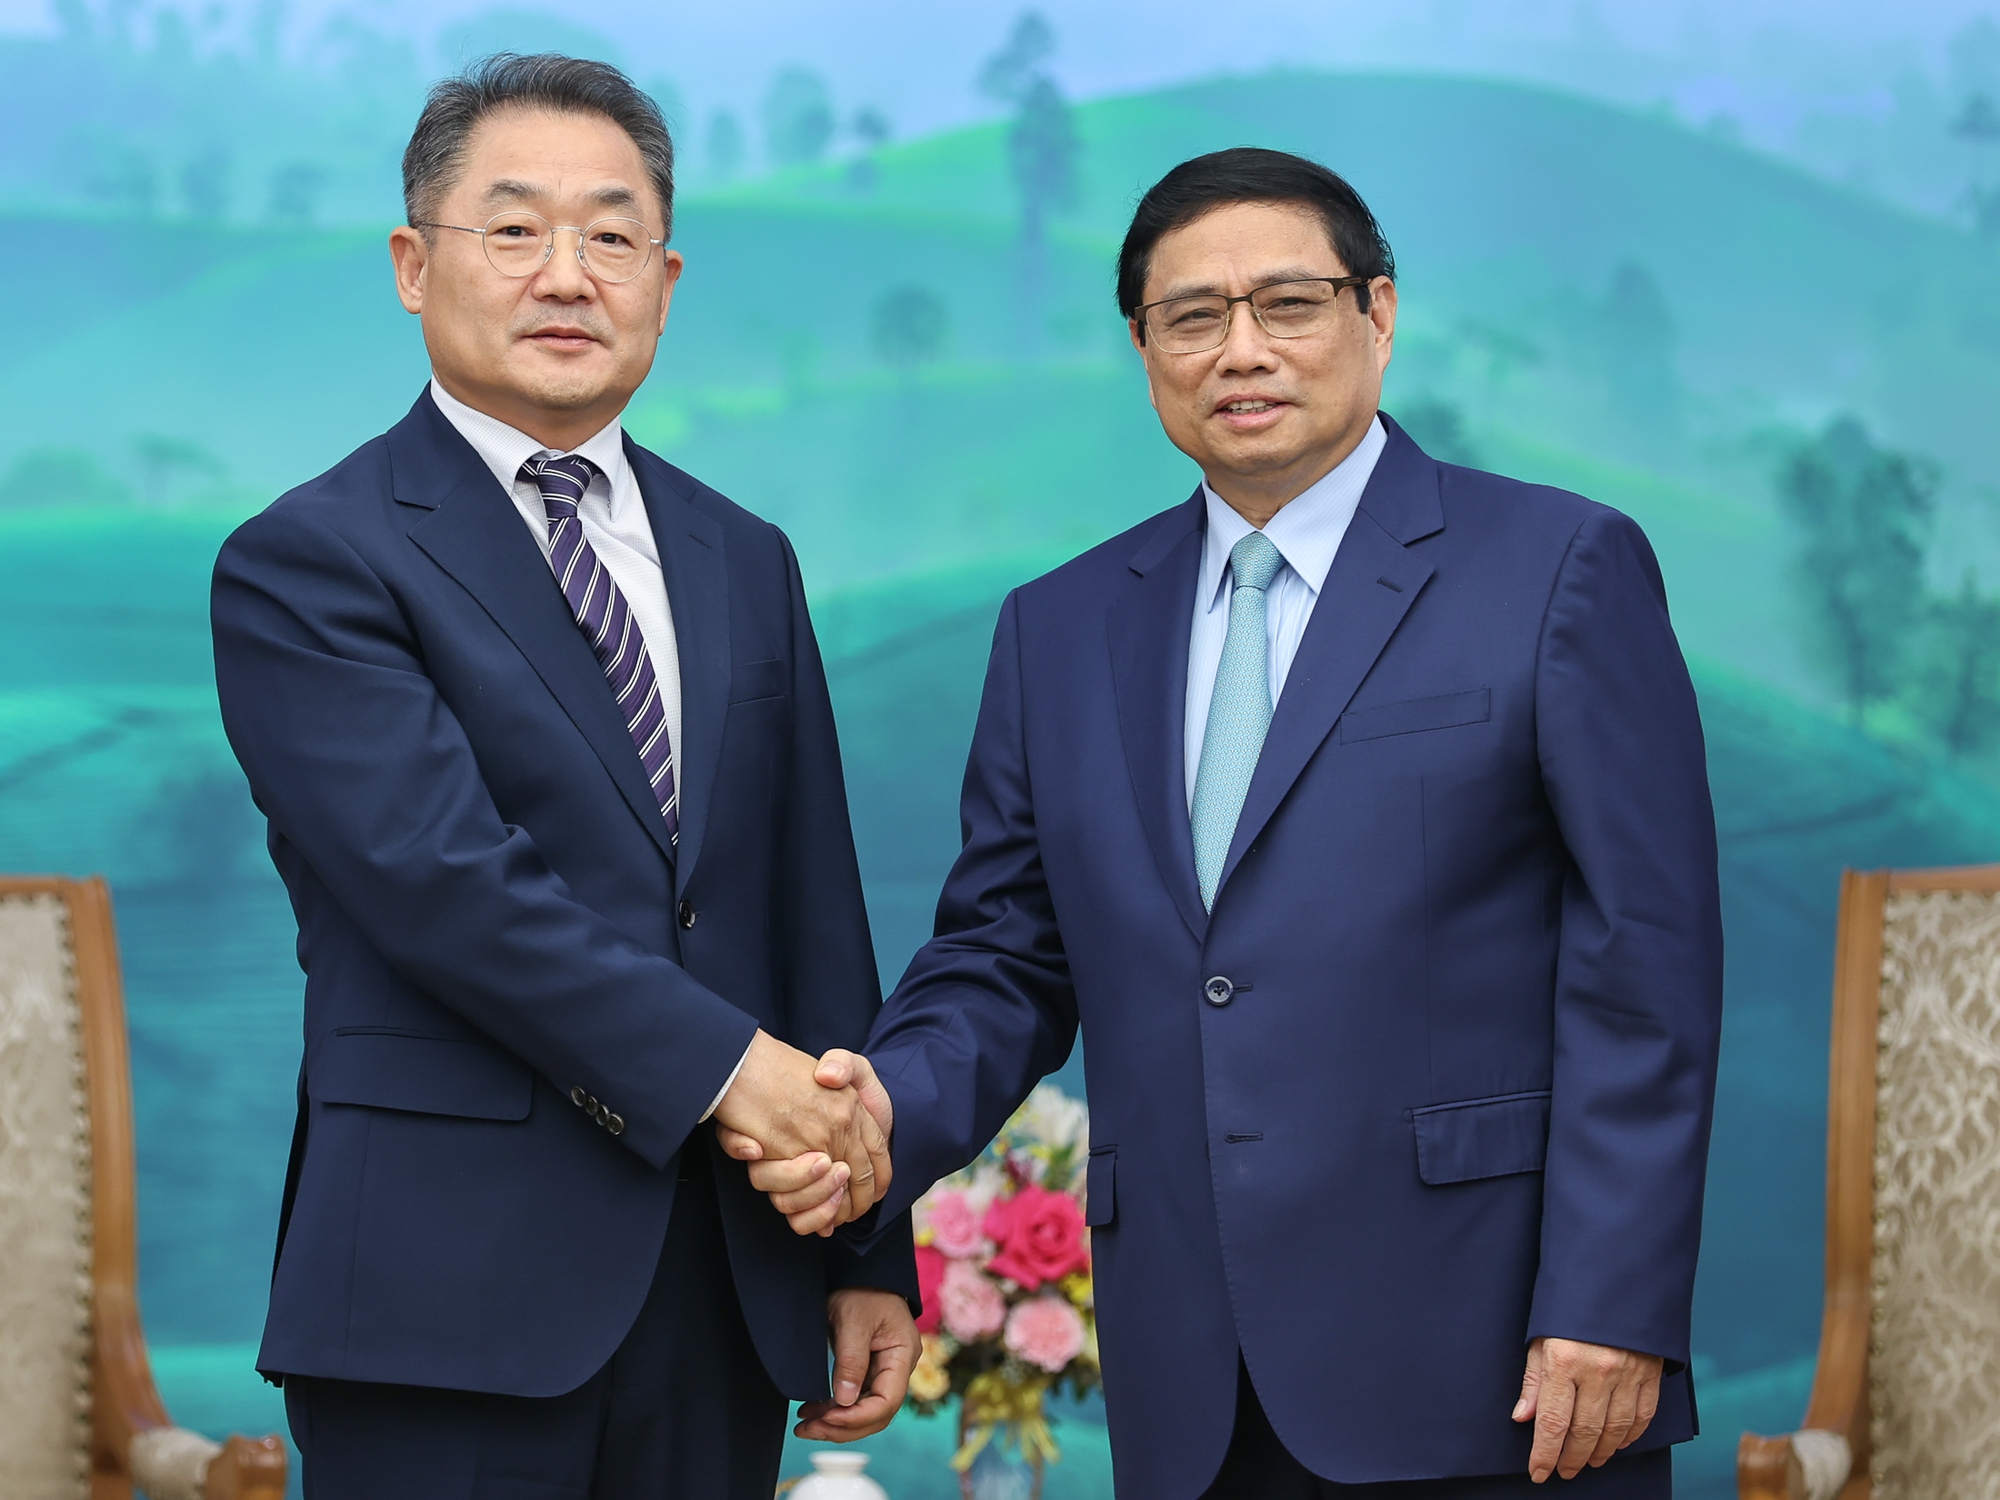 Thủ tướng Phạm Minh Chính tiếp ông Ji Rong Rip, Phó Chủ tịch, Tổng Giám đốc toàn cầu của Tập đoàn công nghệ Amkor - Ảnh: VGP/Nhật Bắc